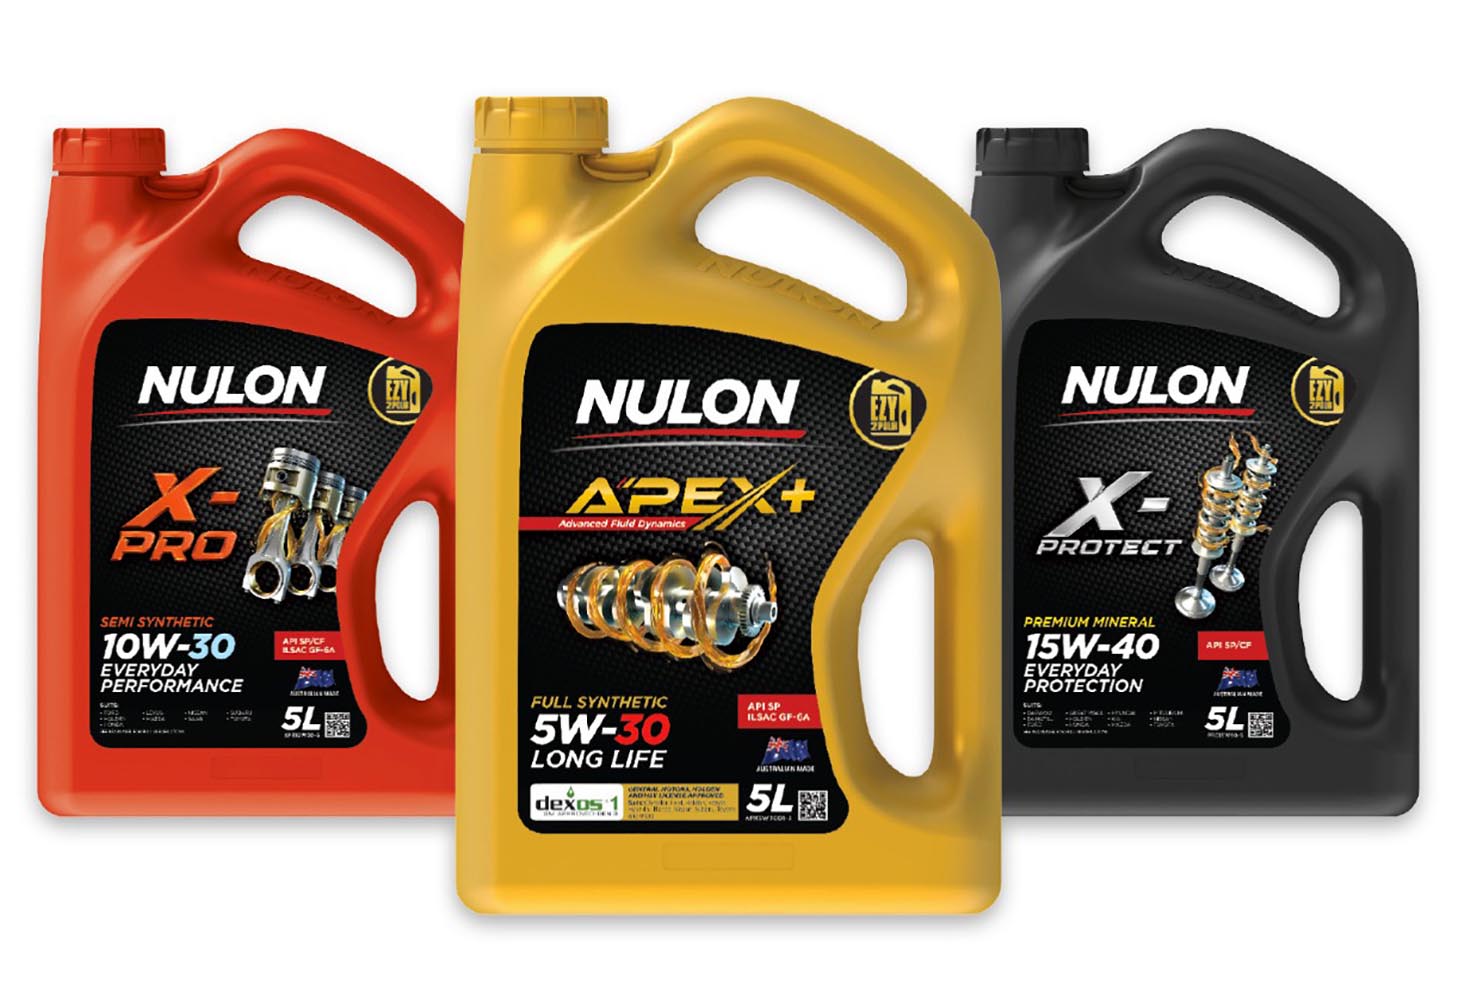 Nulon announces new range of engine oils